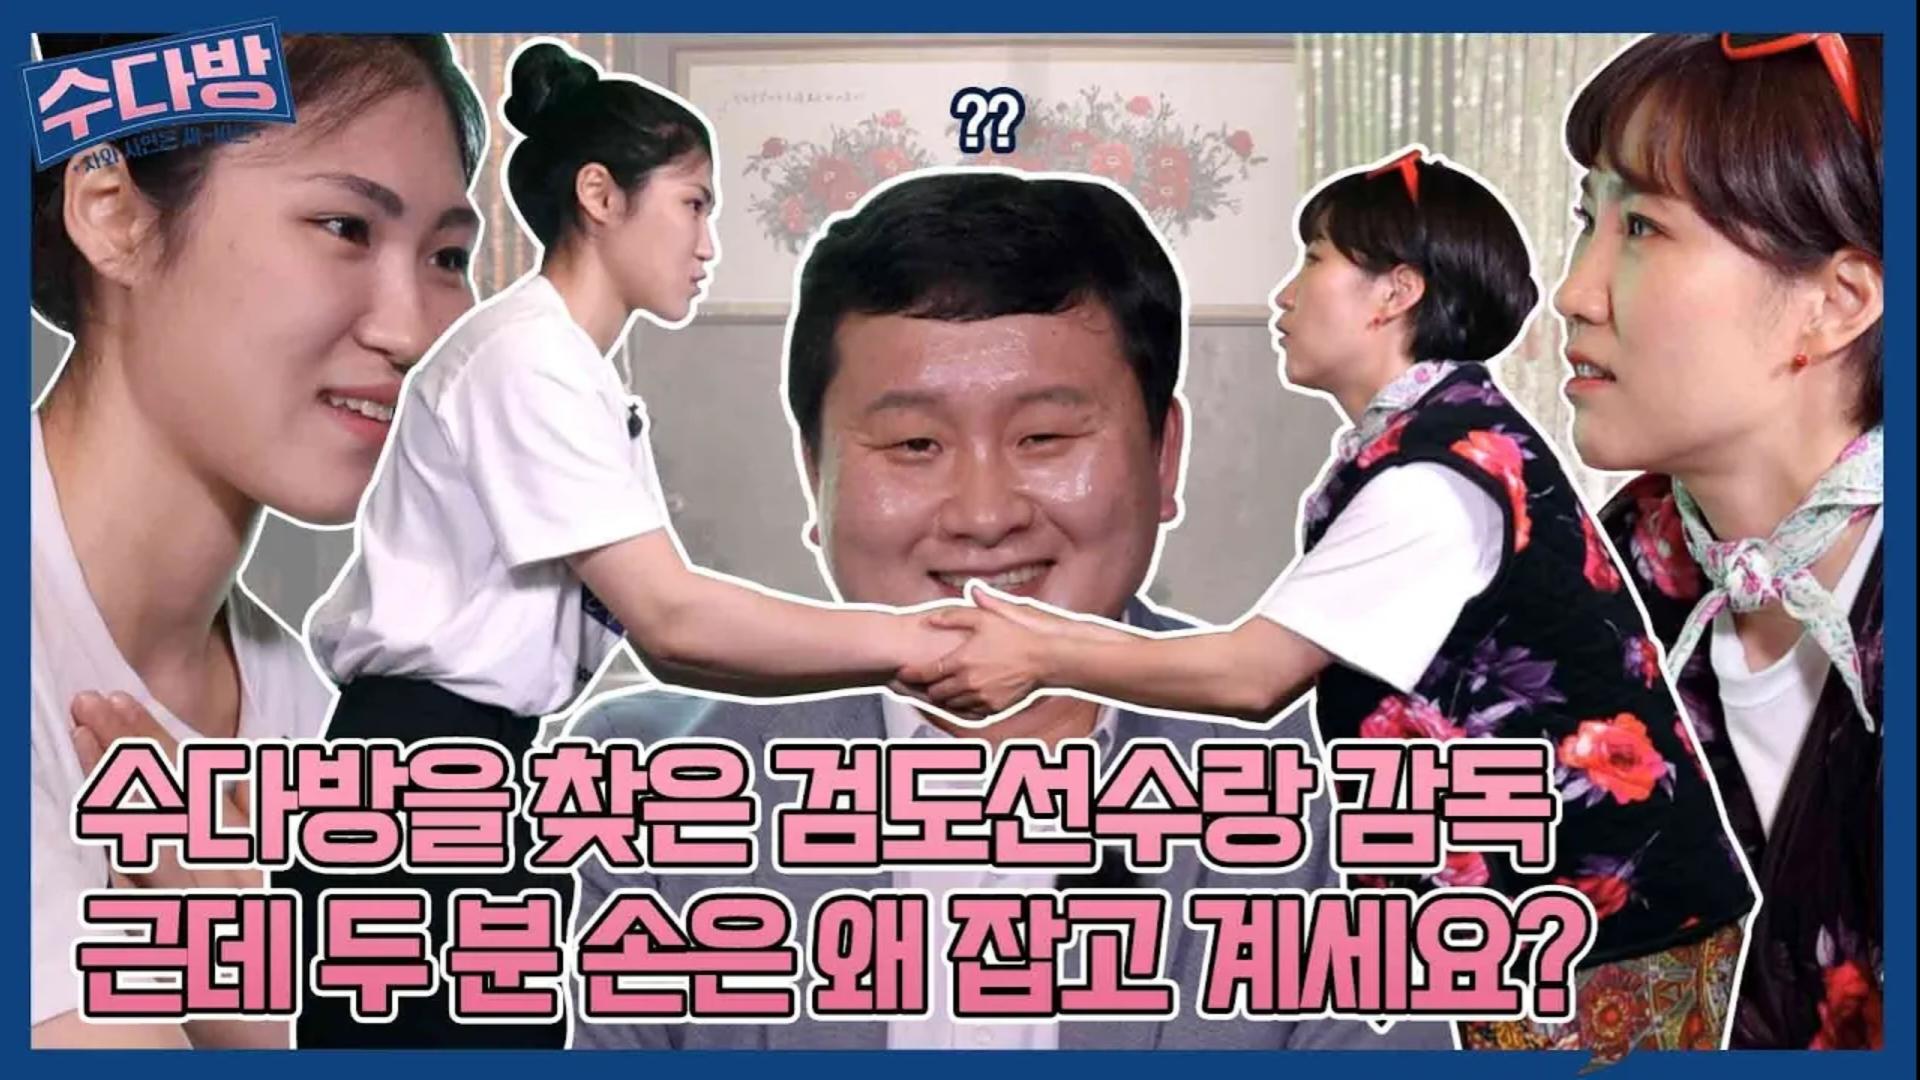 01. 부산시 체육회 소속 ‘이예진’ 검도 선수, ‘서준배’ 감독